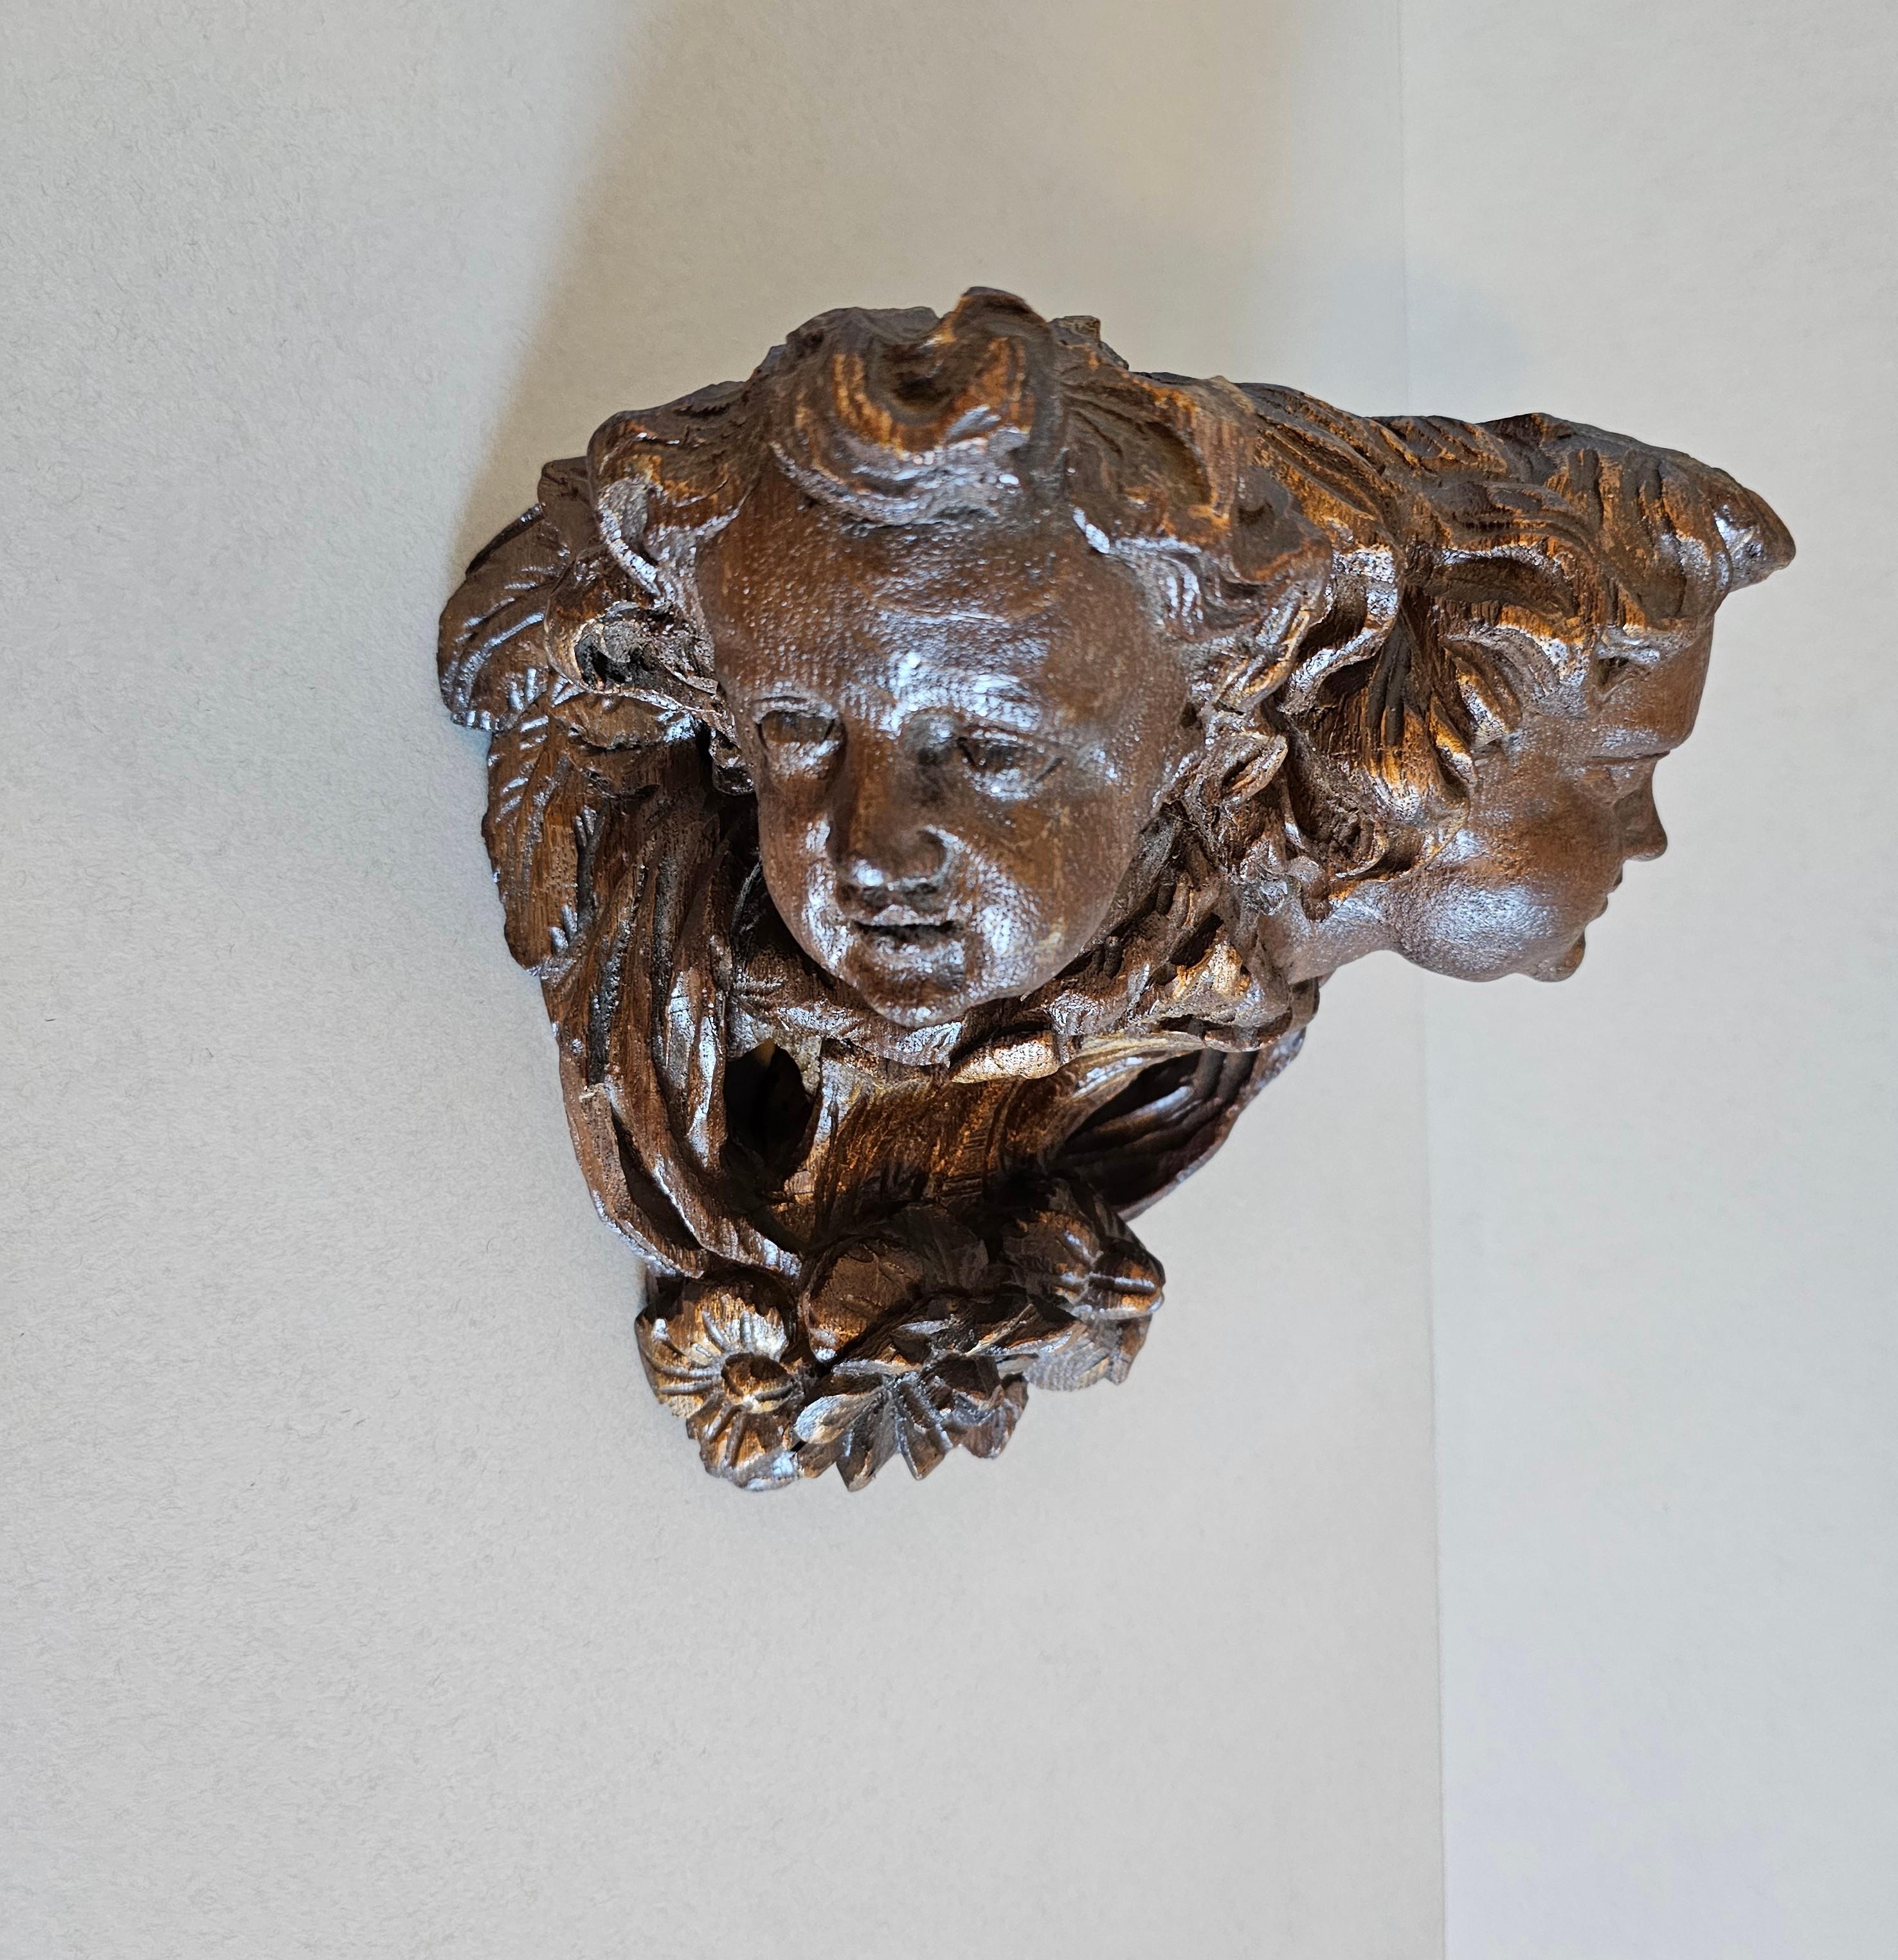 Un élément architectural finement sculpté de la période baroque, aujourd'hui transformé en étagère sculpturale. 

Fabriqué à la main par un maître-artisan au XVIIIe siècle, il faisait à l'origine partie d'un encorbellement, provenant probablement